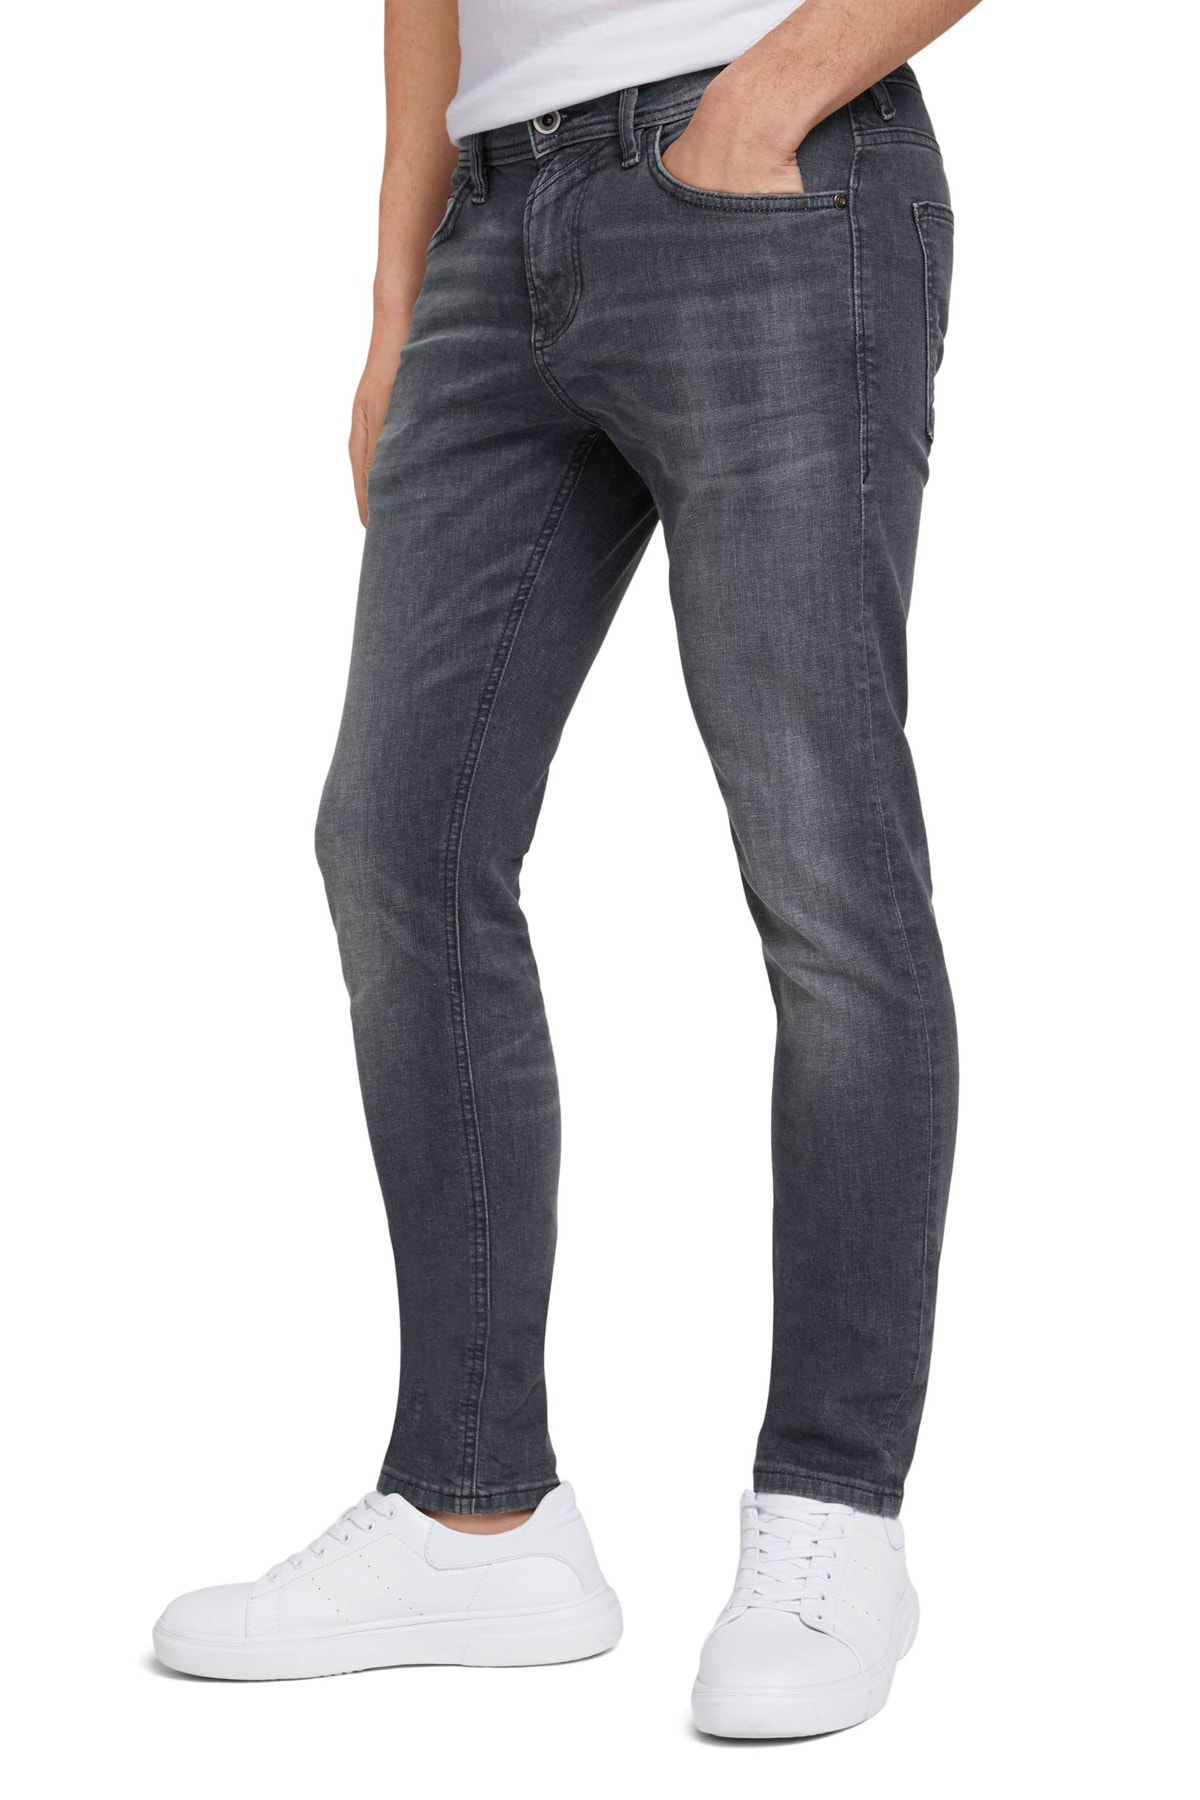 Джинсы - Серые - Скинни Tom Tailor Denim, серый джинсы denim fashion серые 40 размер новые